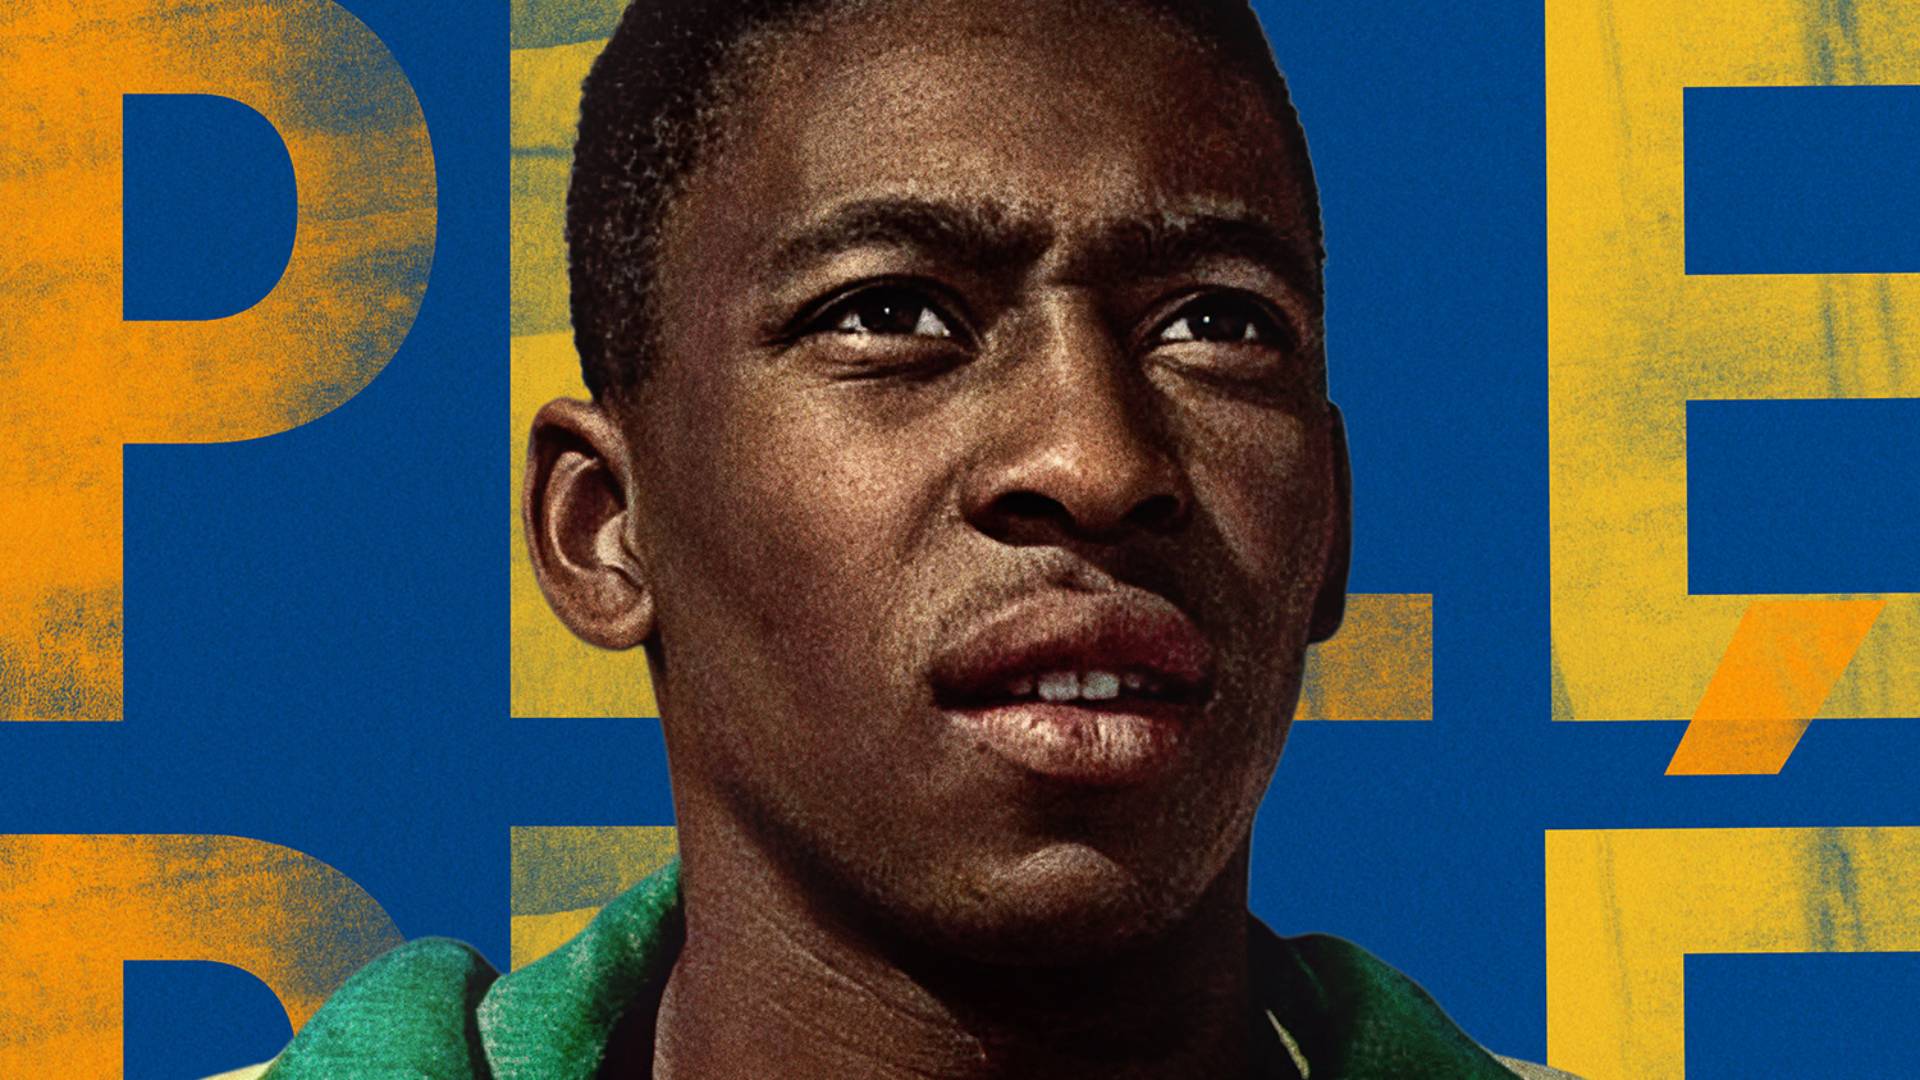 Netflix divulga trailer do documentário ‘Pelé’